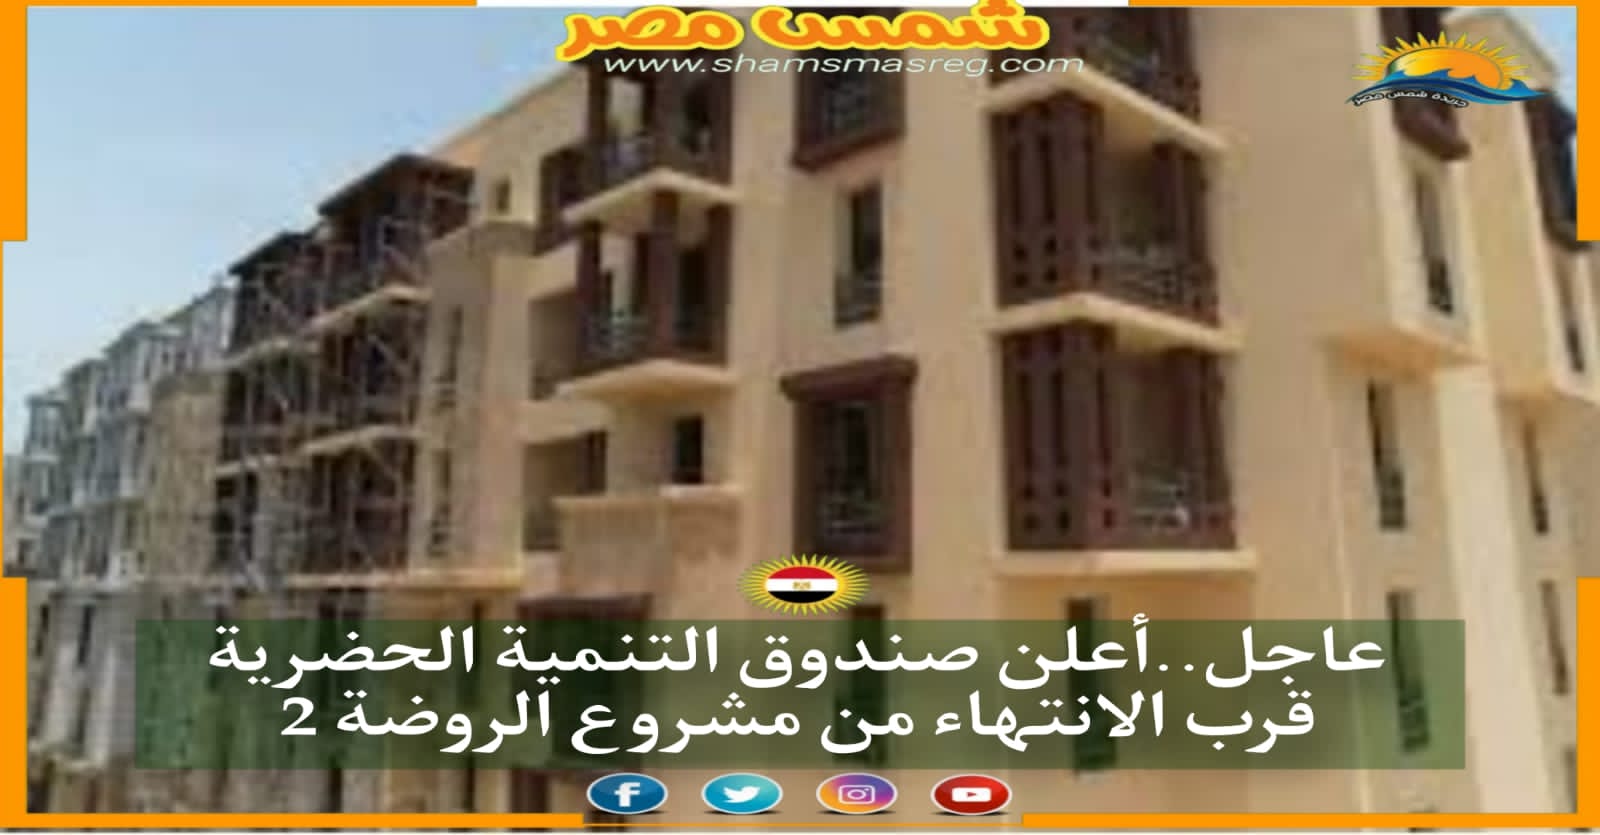 عاجل .. أعلن صندوق التنمية الحضرية قرب الانتهاء من مشروع الروضة 2